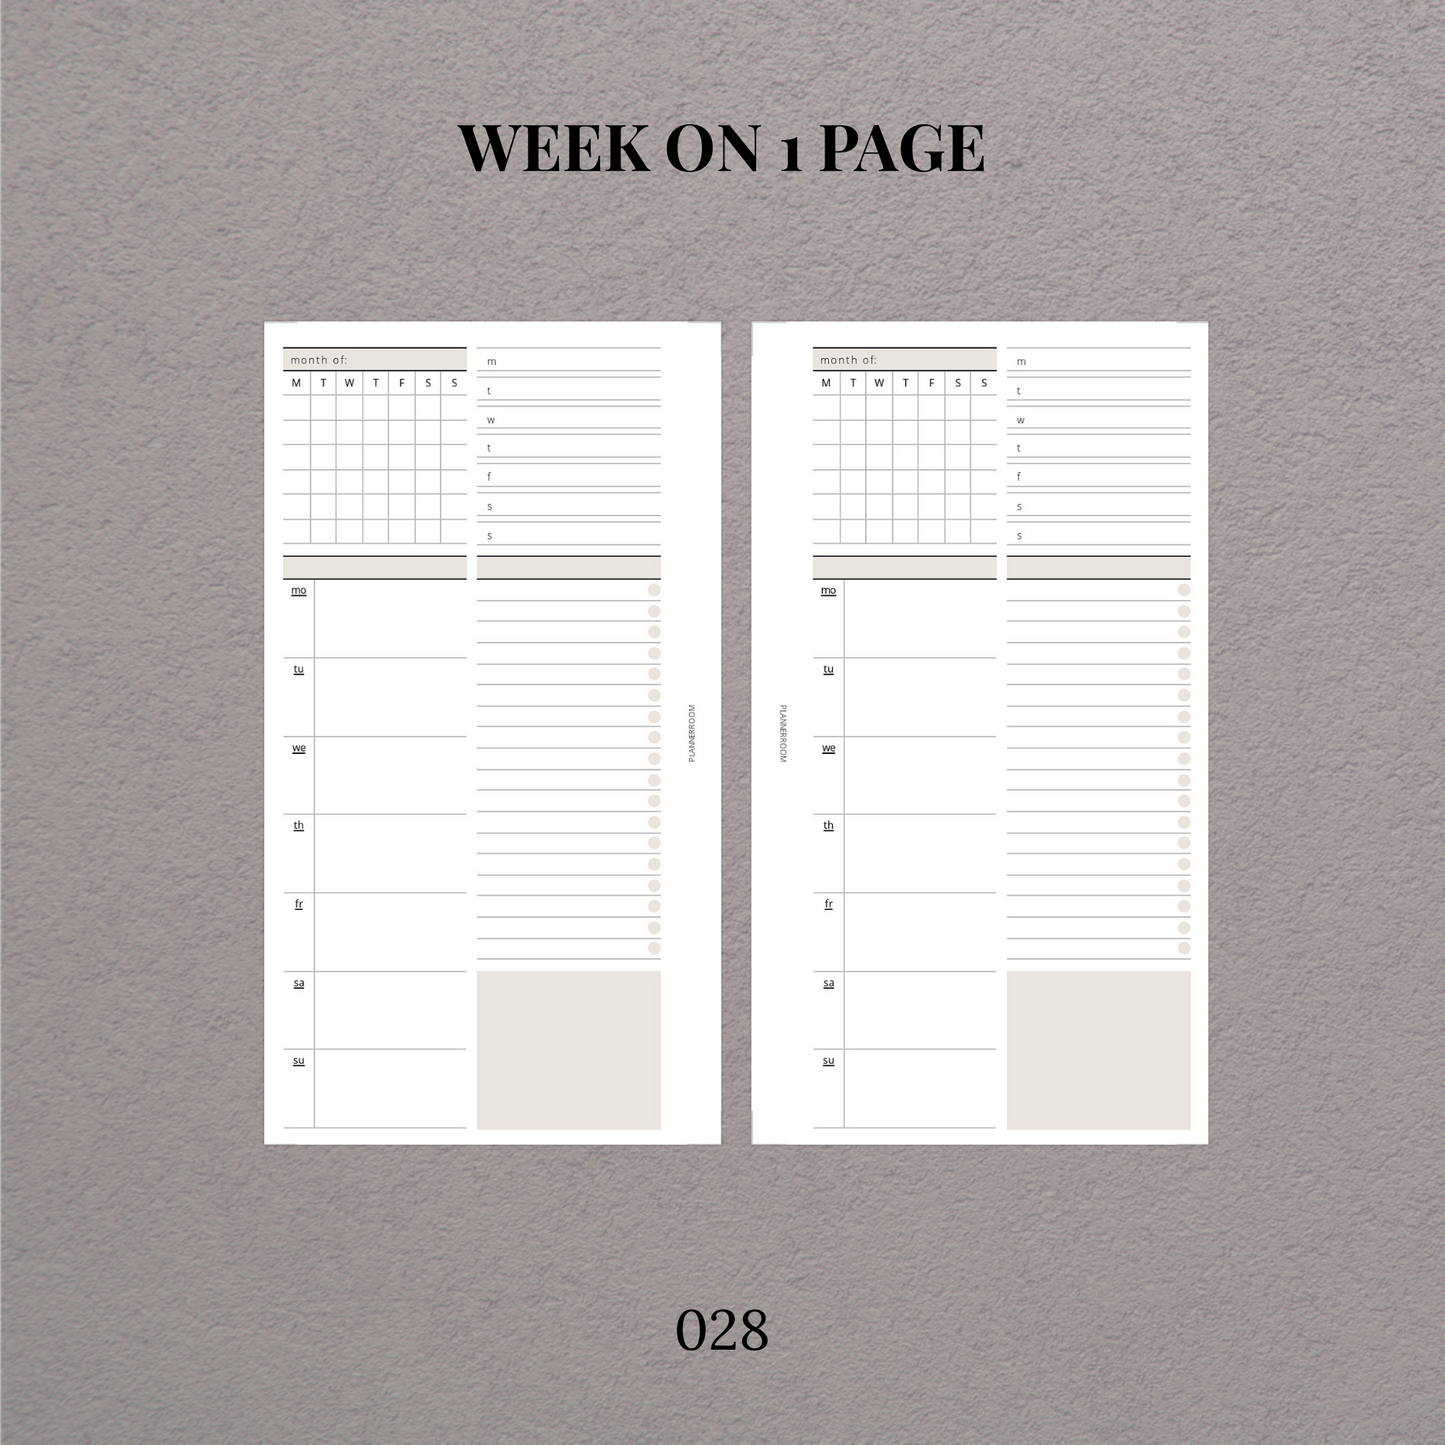 Weekly planner | Printable planner - 028